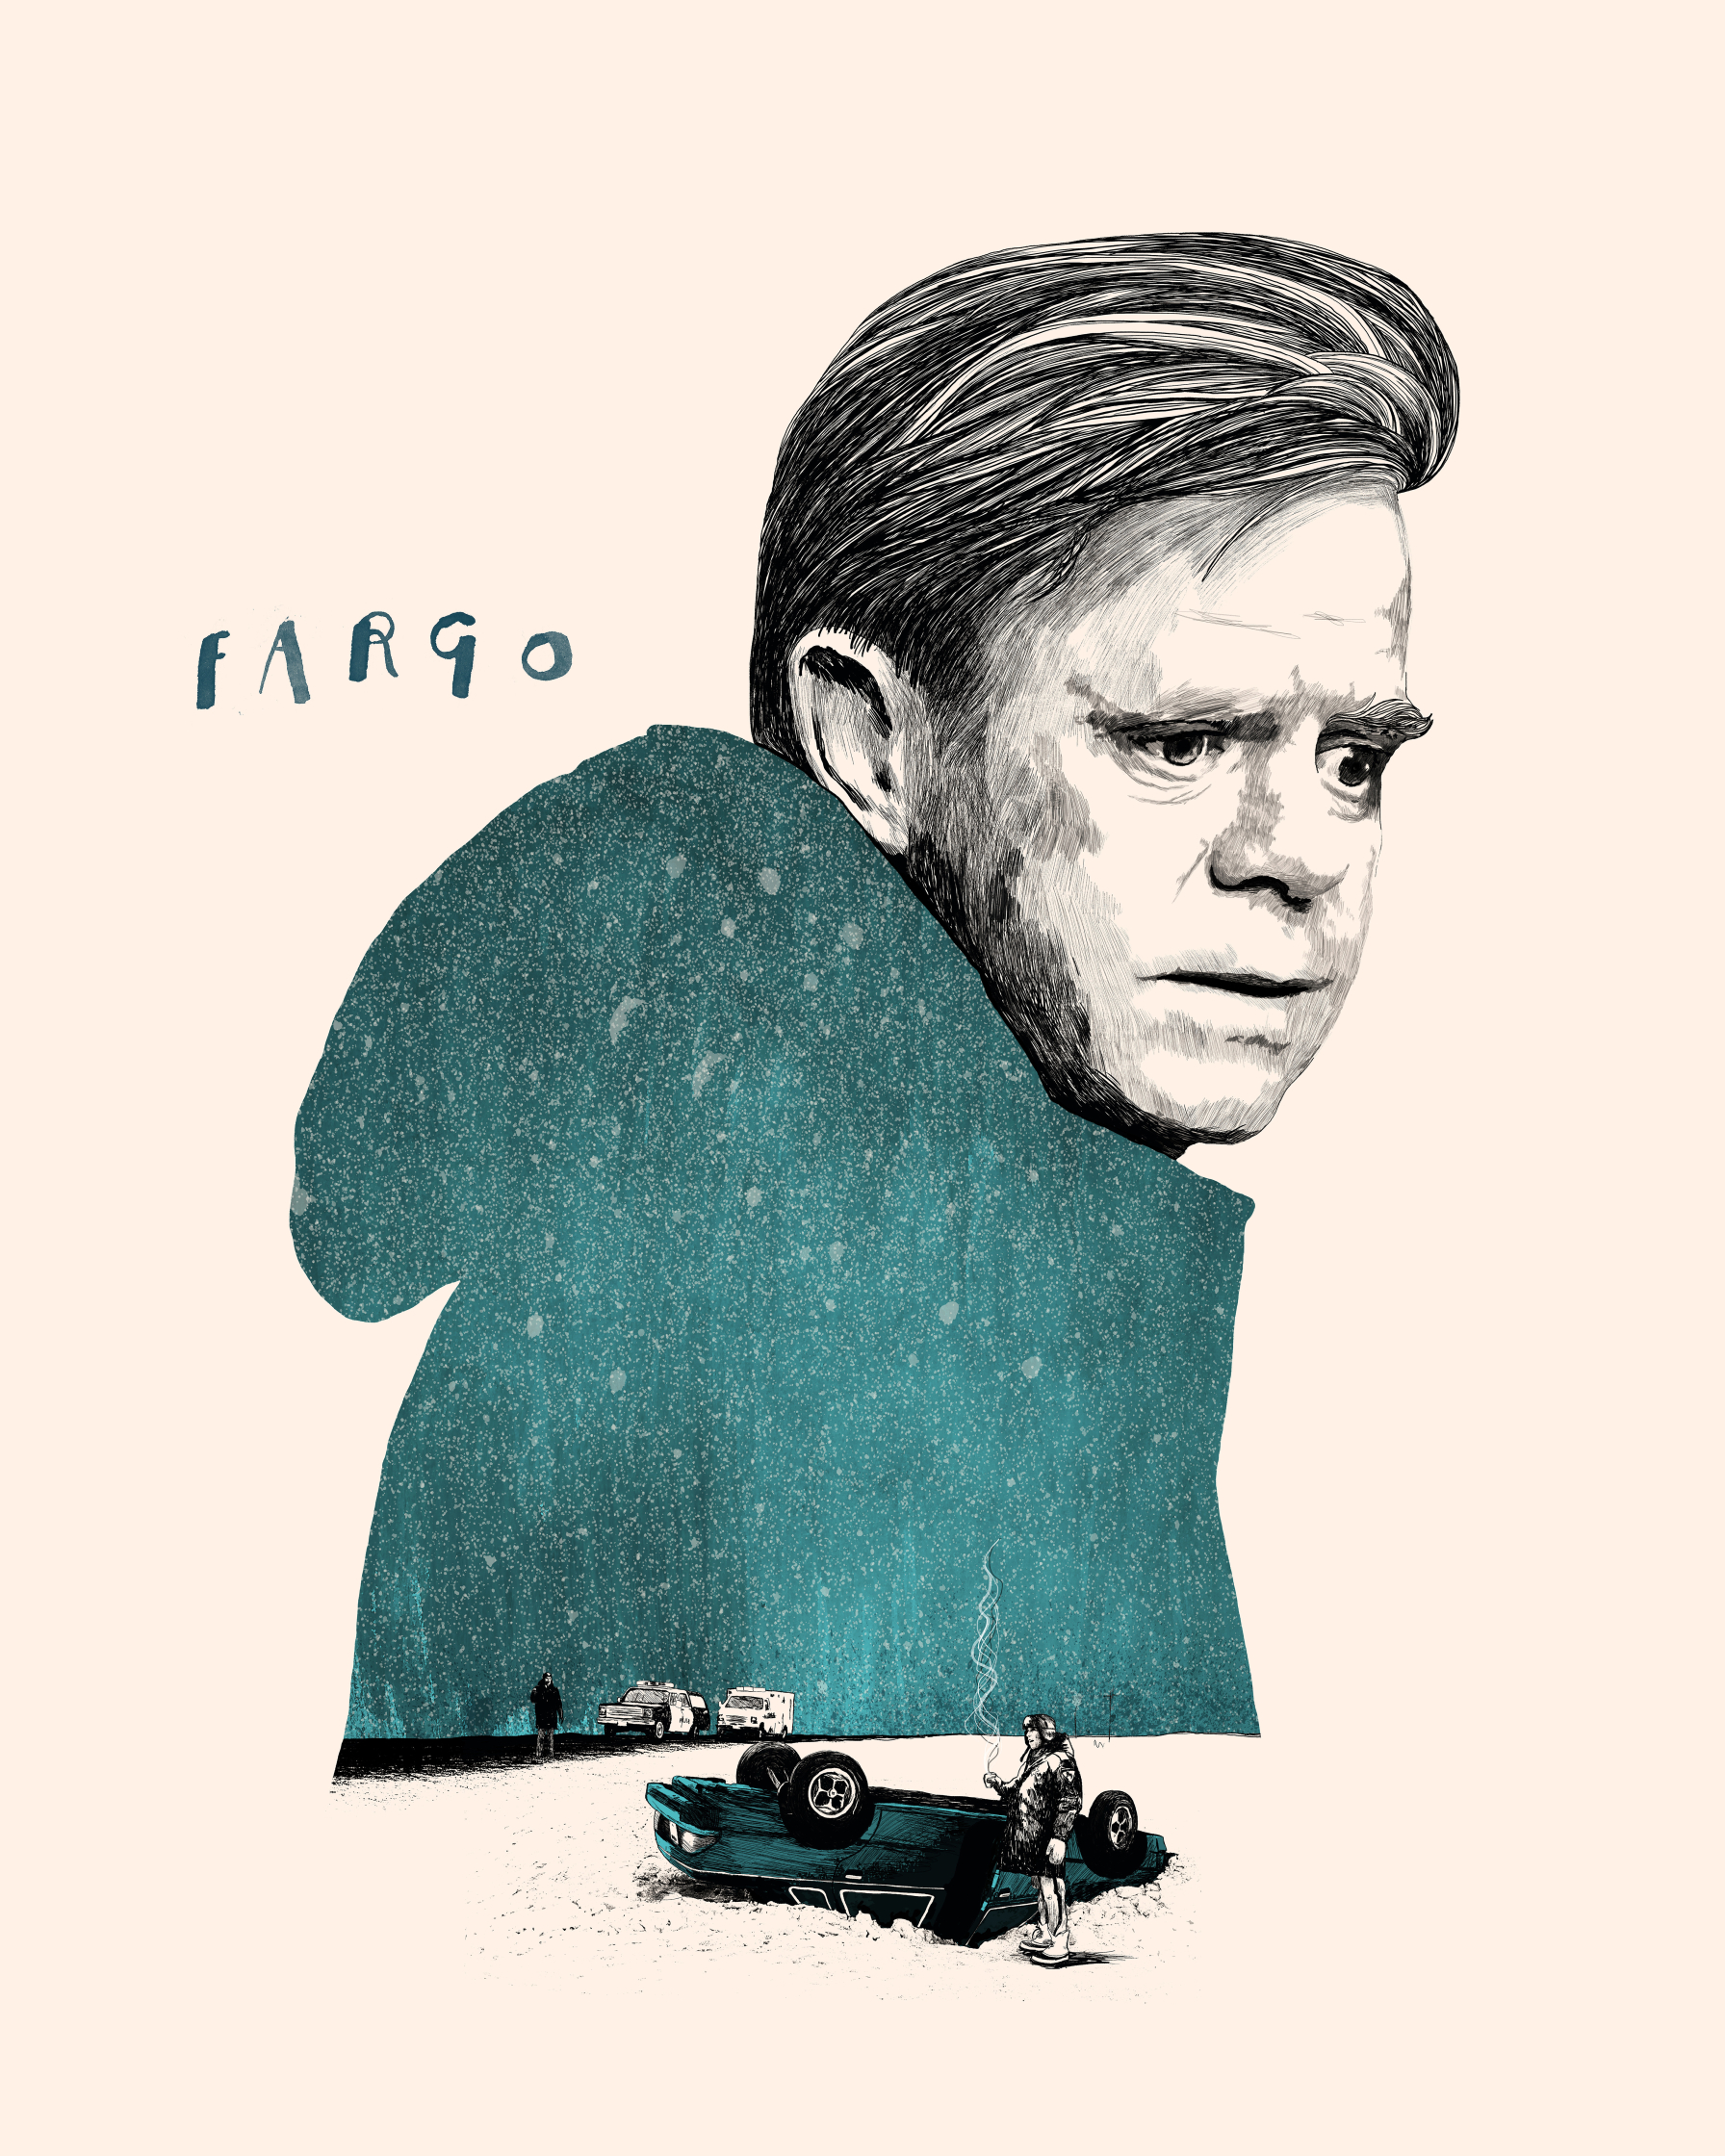 Fargo / Spoke Art